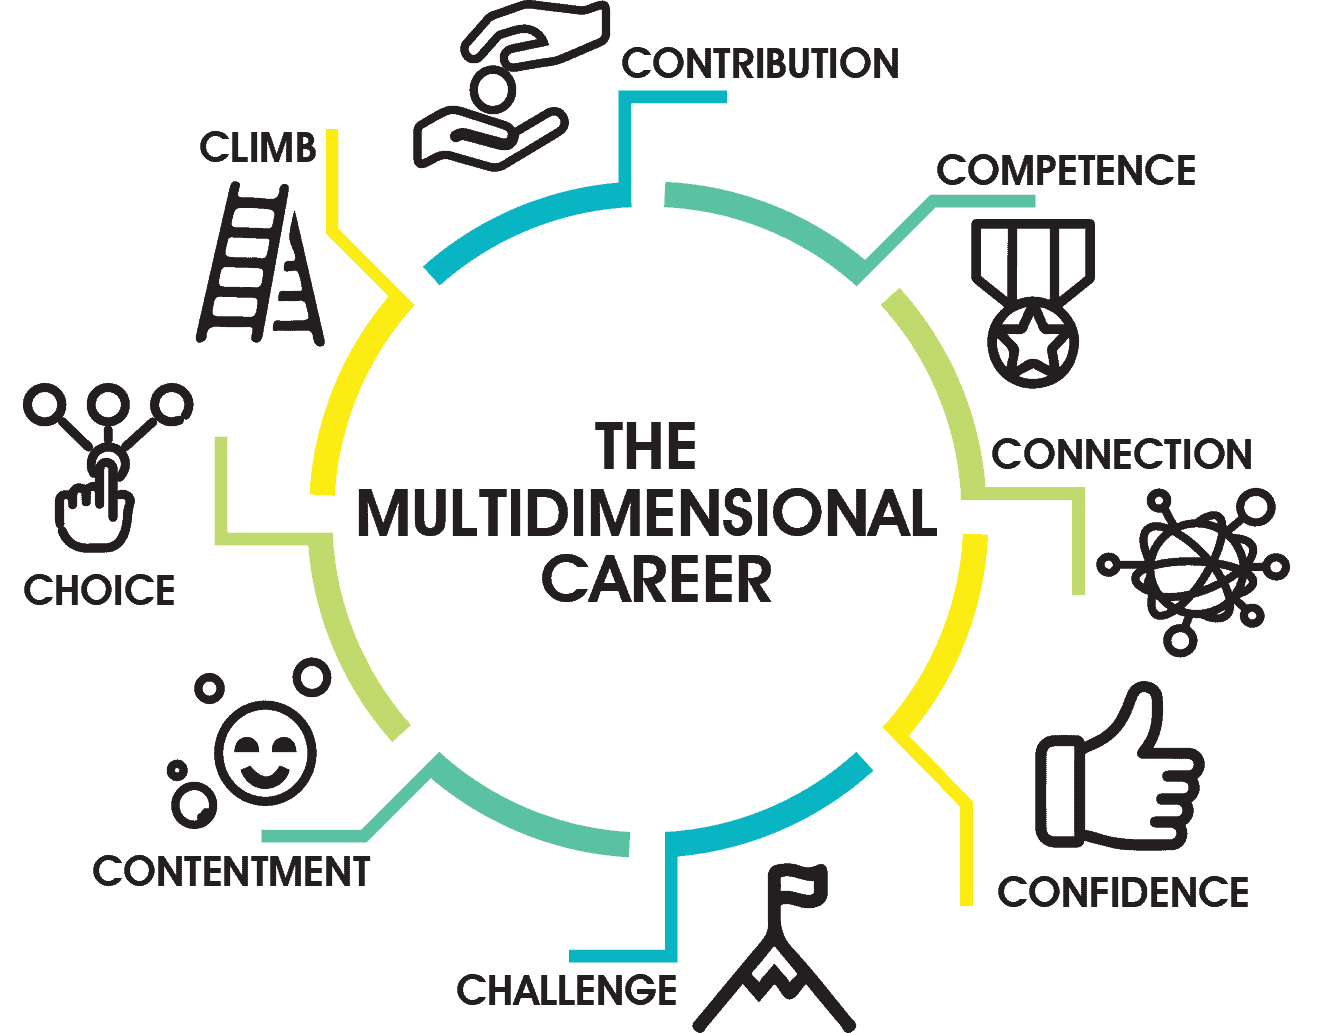 The Multidimensional Career